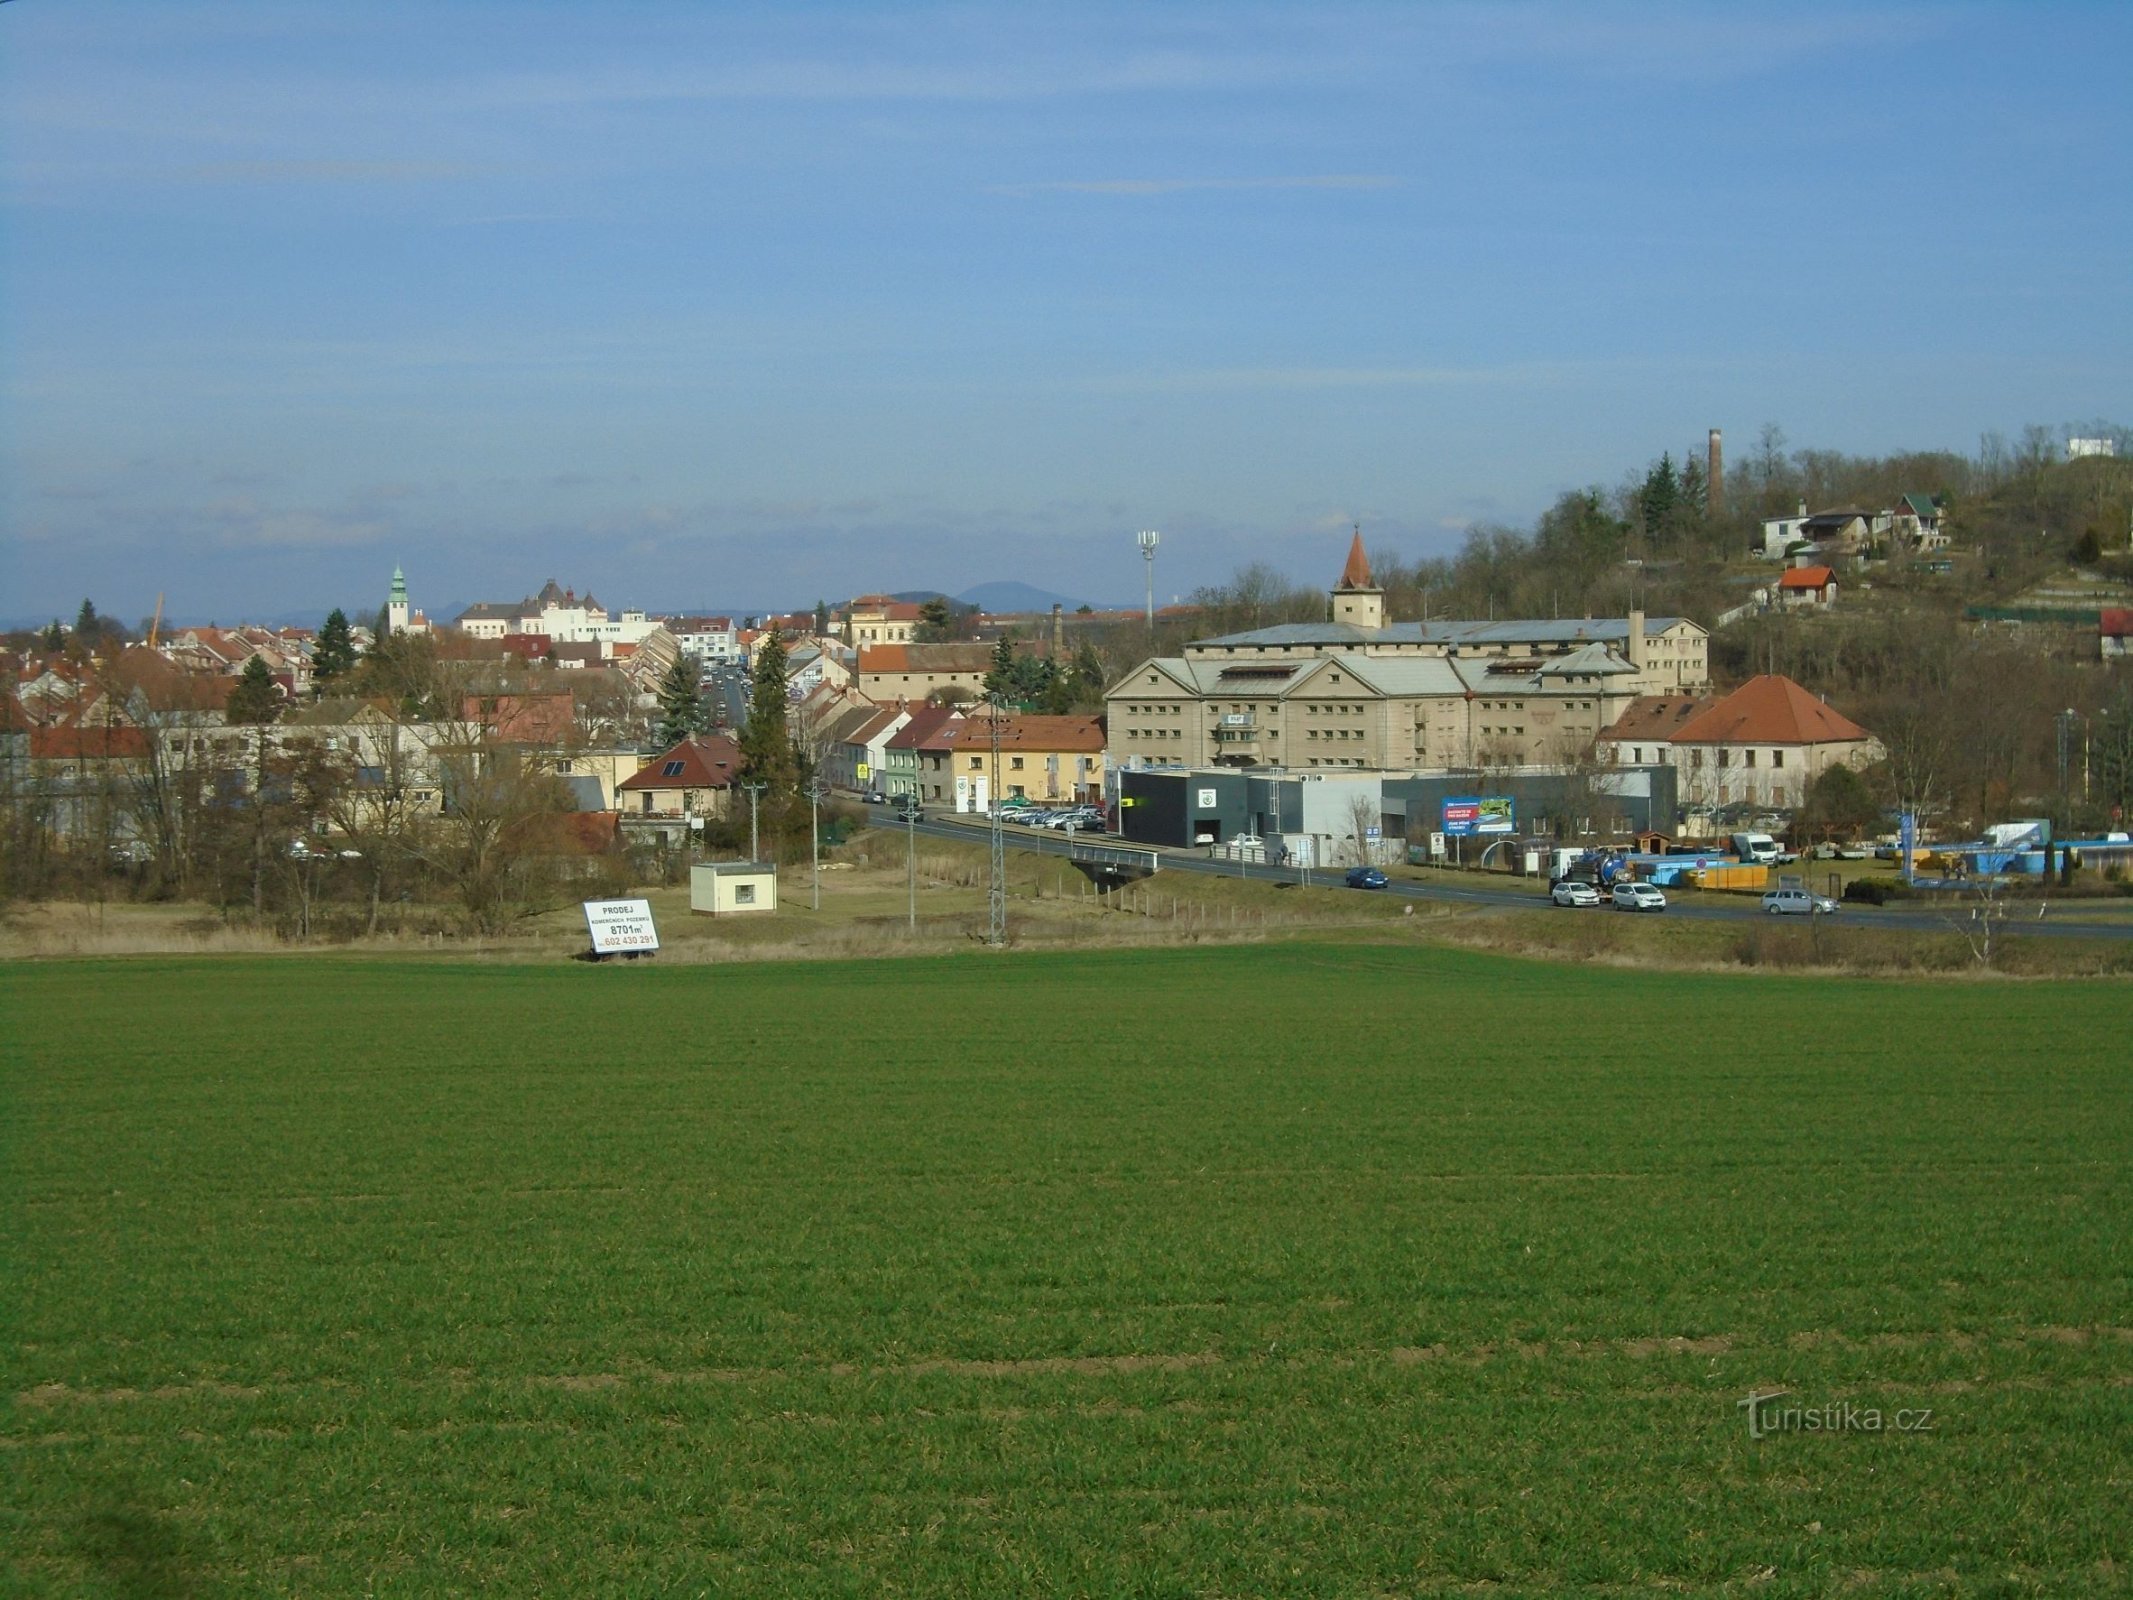 Άποψη του Roudnica nad Labem (6.3.2019 Μαρτίου XNUMX)